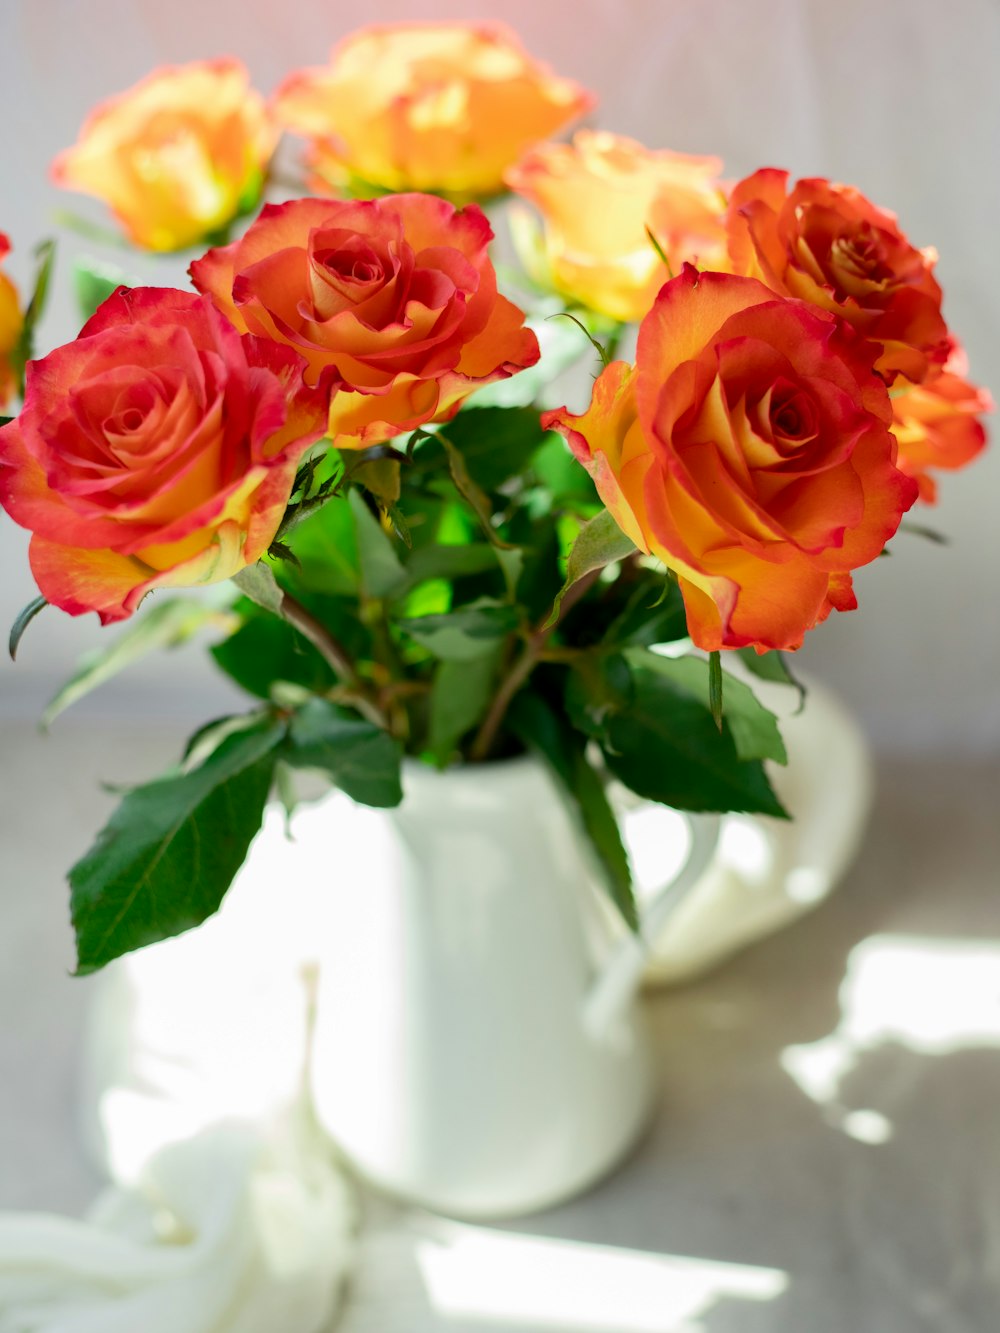 Roses rouges et jaunes dans un vase en céramique blanche